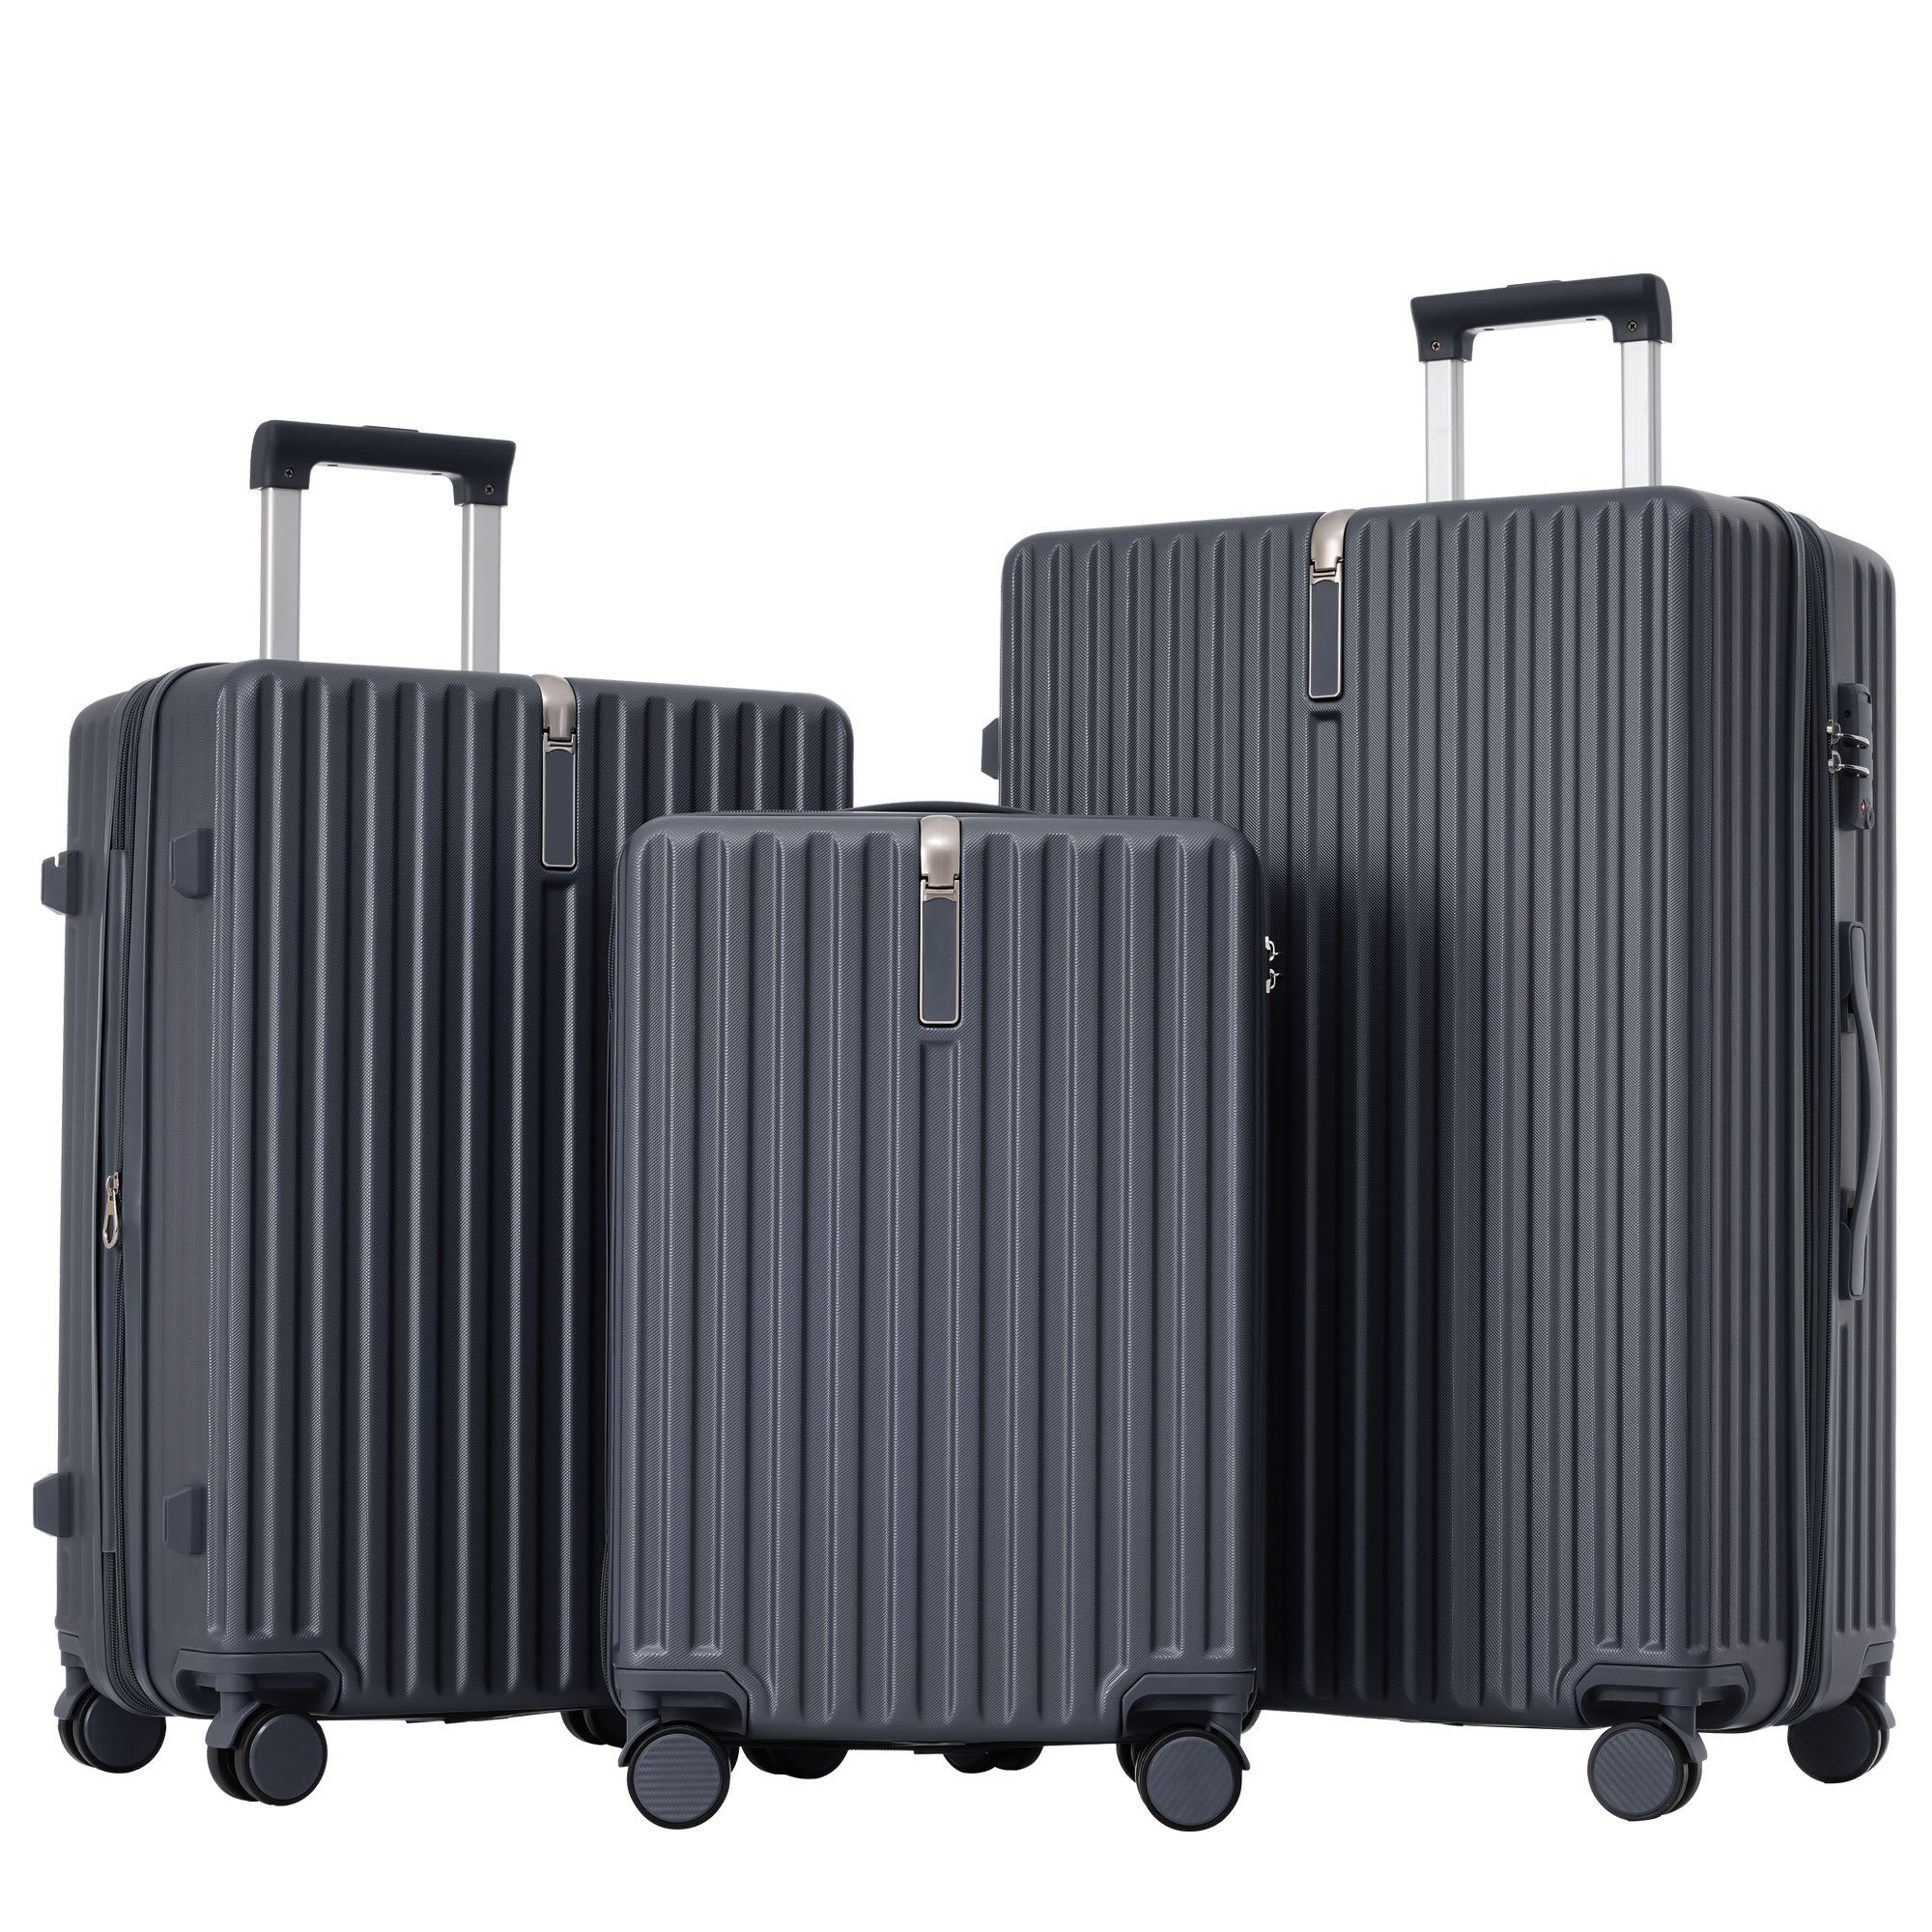 Ulife Trolleyset Kofferset Handgepäck Reisekoffer ABS-Material, TSA Zollschloss, 4 Rollen, (3 tlg) Grau